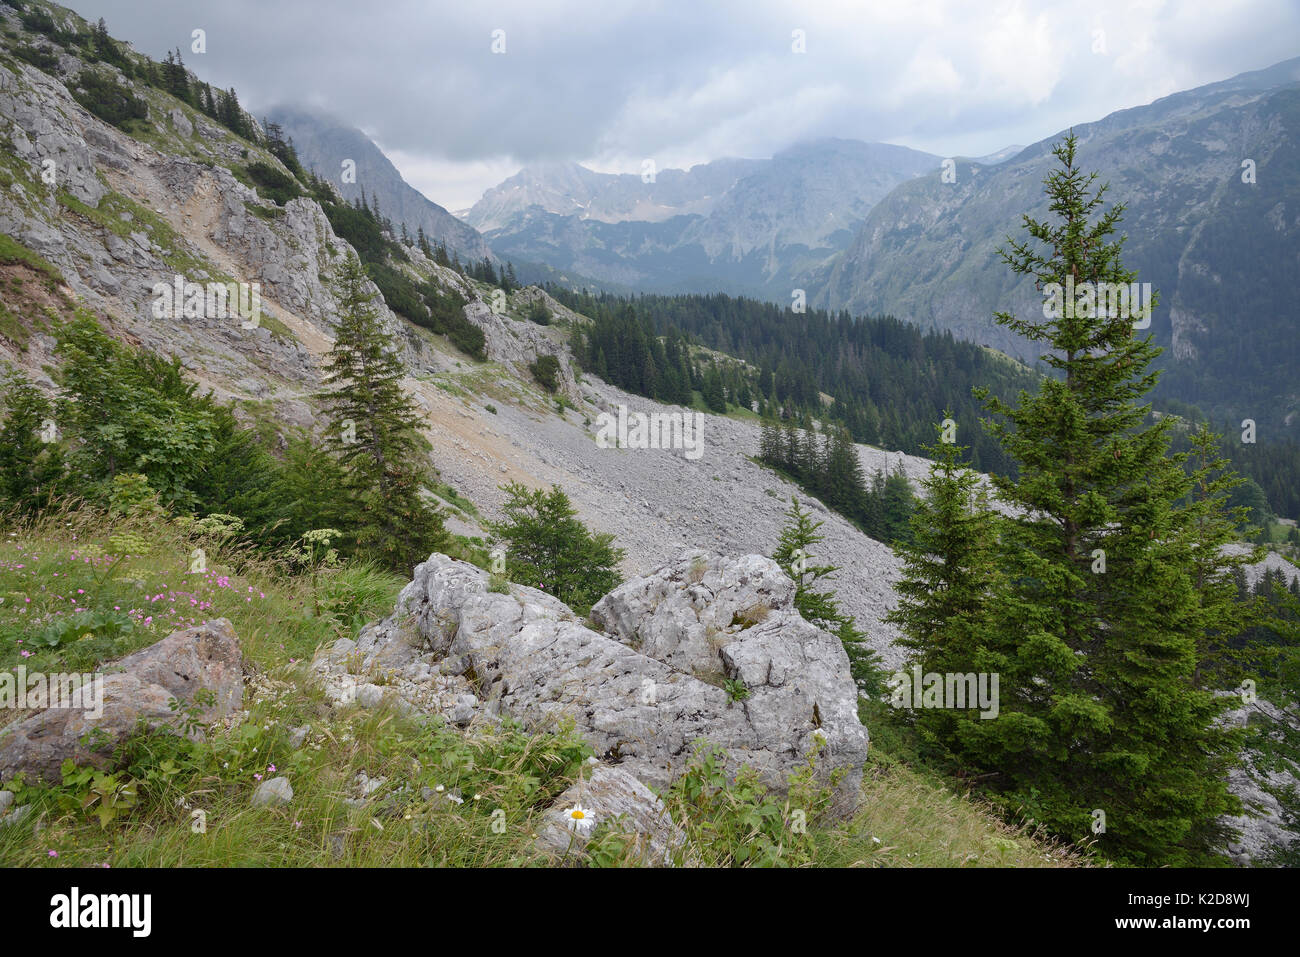 Kalkstein Felsen und Geröll an den Hängen des Mount Maglic, Bosniens höchster Berg, mit Blick auf die Velika Vitao peak in Montenegro über die nahe Grenze, Nationalpark Sutjeska, Bosnien und Herzegowina, Juli 2014. Stockfoto